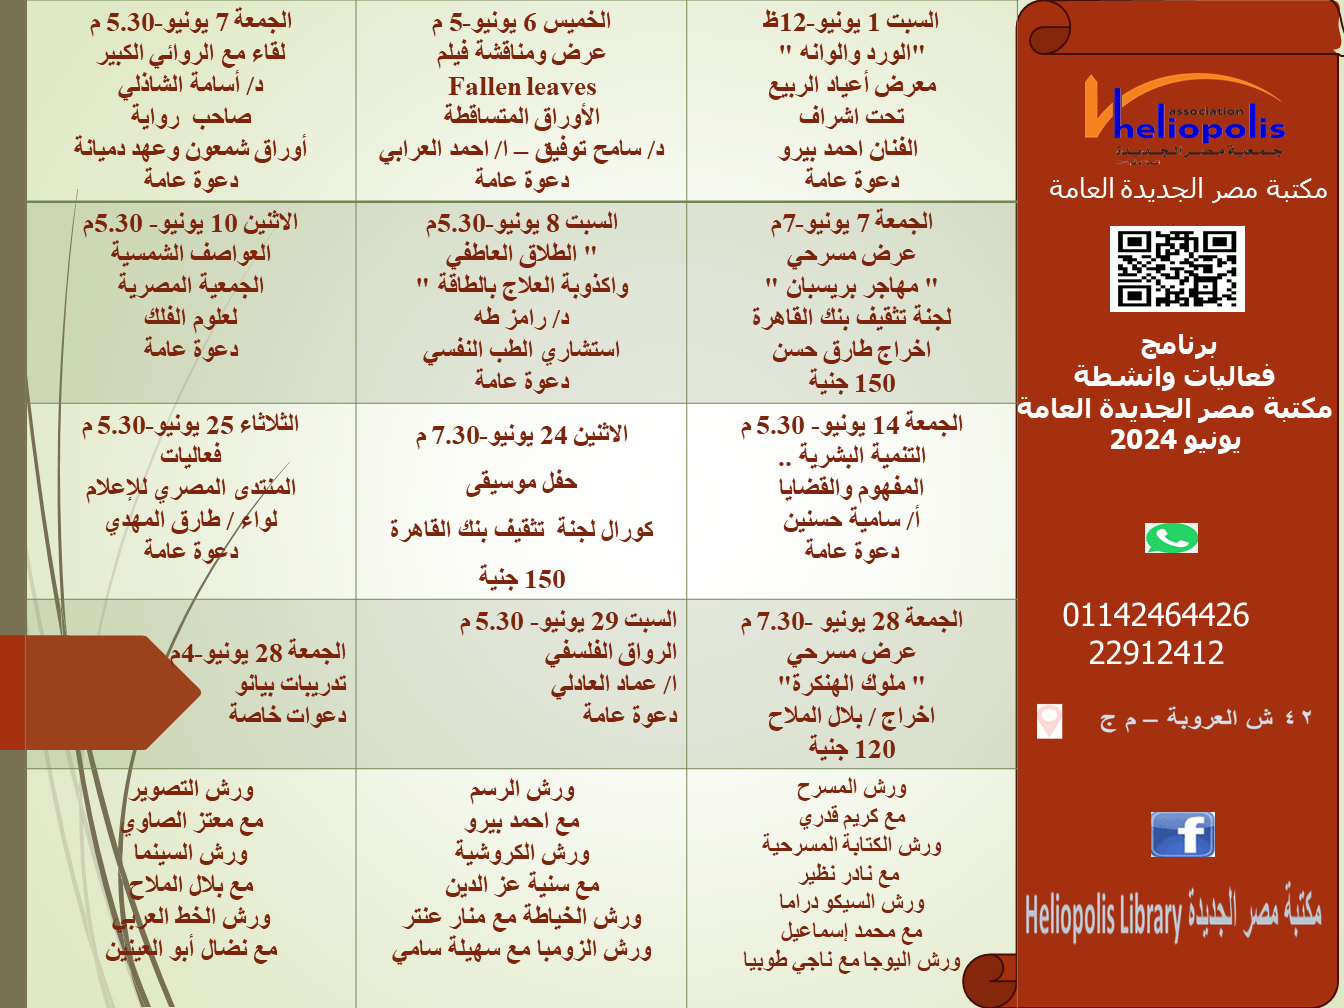 جدول فعاليات مكتبة مصر الجديدة العامة شهر يونيو 2024